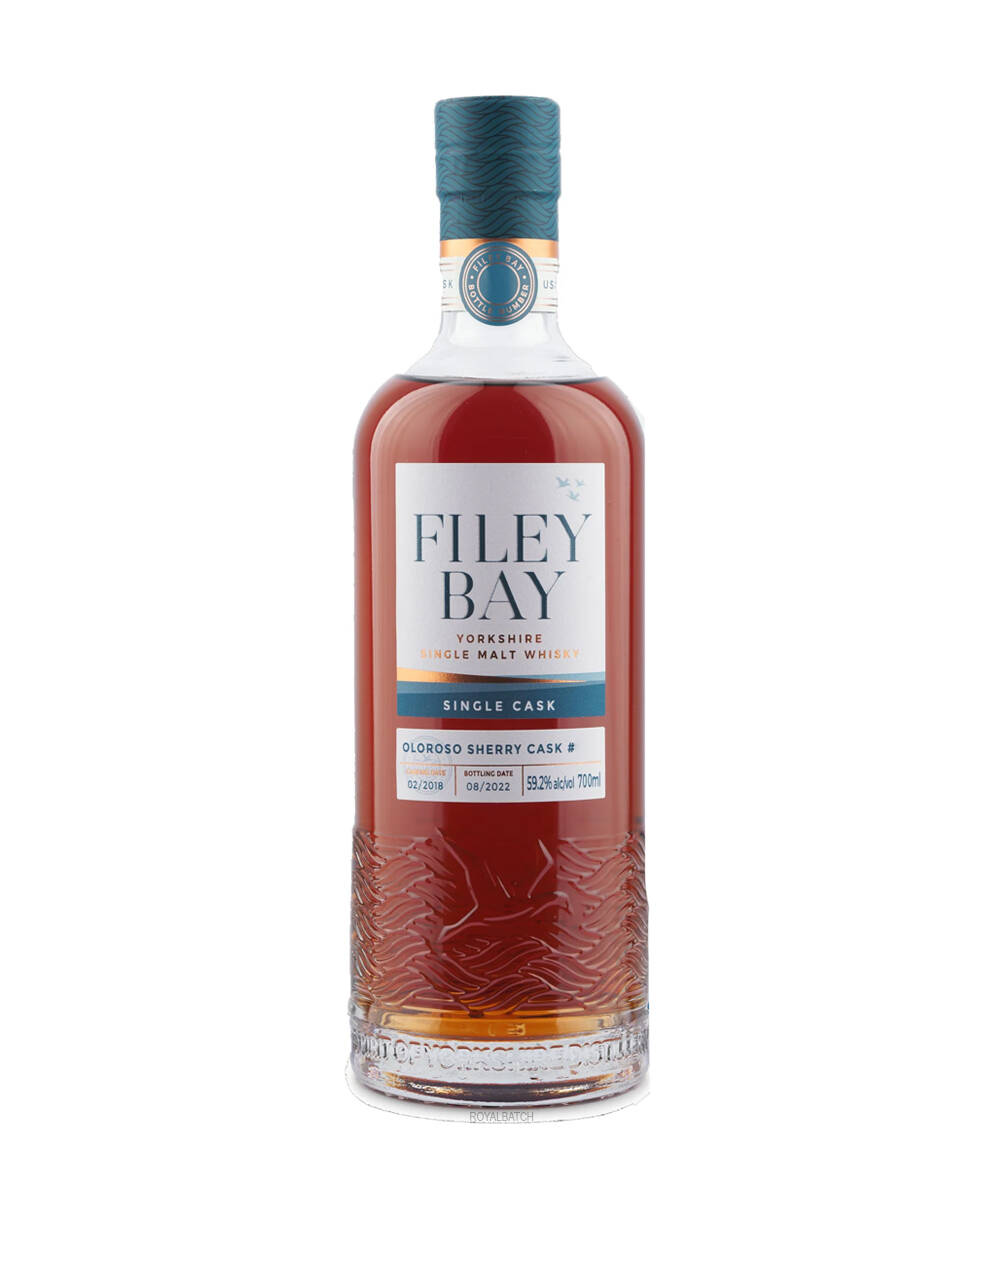 Filey Bay Yorkshire Single Cask Oloroso Sherry Cask #904 Single Malt Whisky